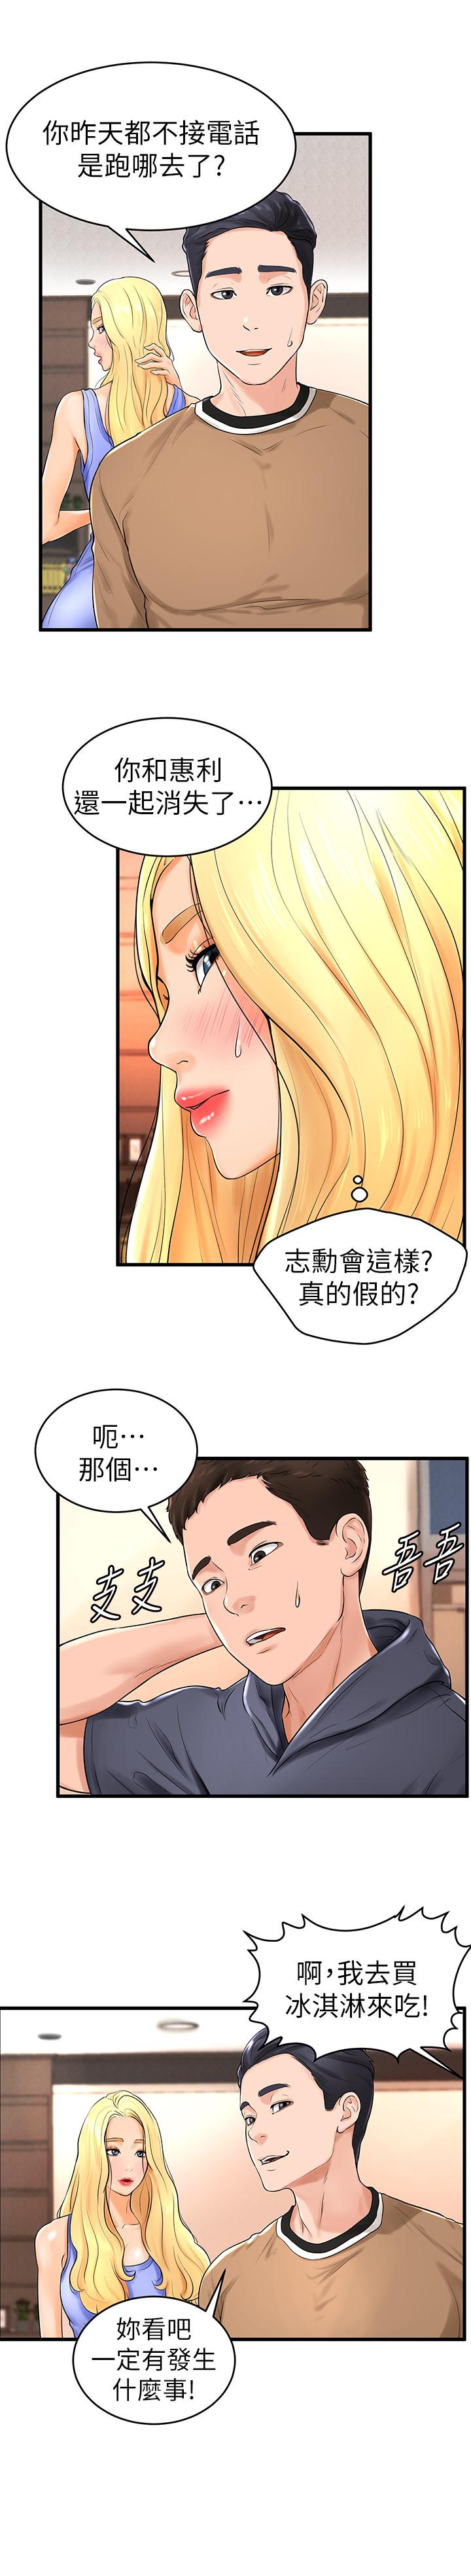 韩国污漫画 撞球甜心 第10话-多爱的煽情要求 13